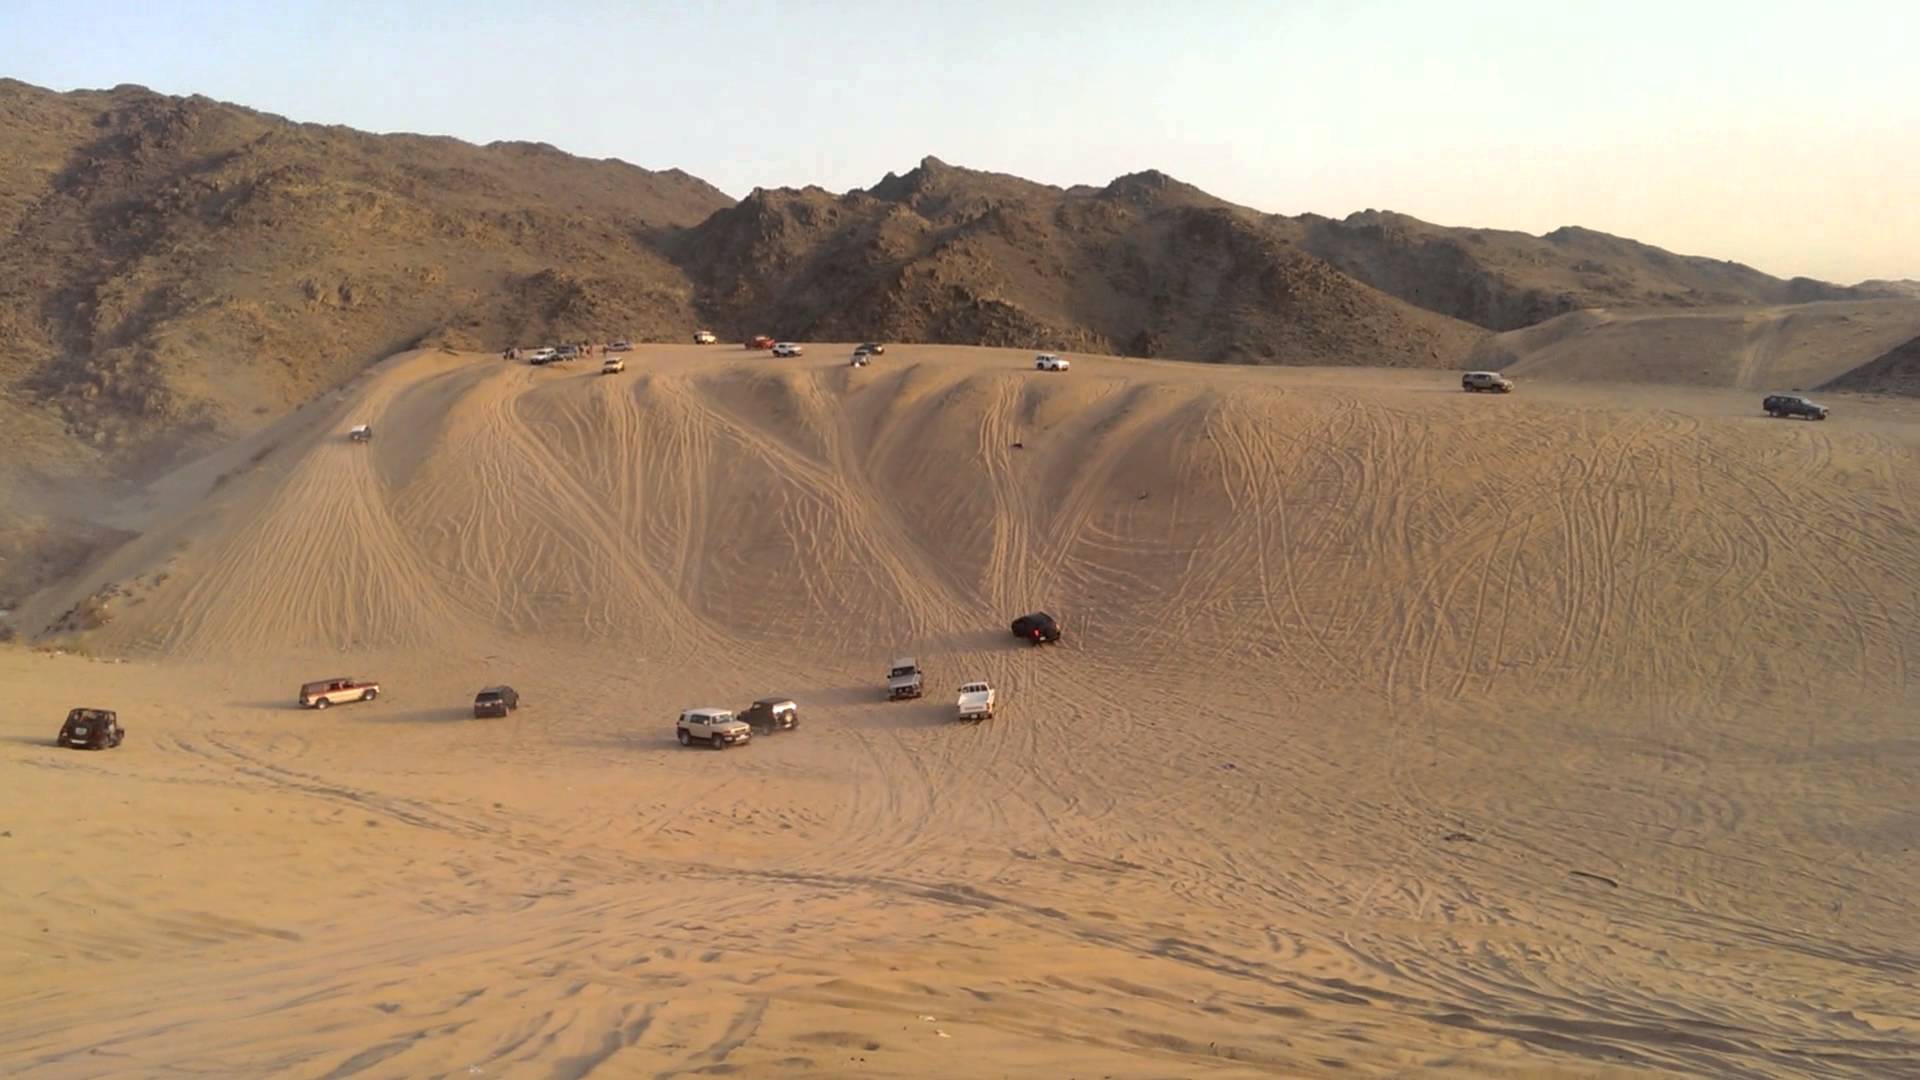 Dune bashing scene jeddah,Saudi Arabia - YouTube